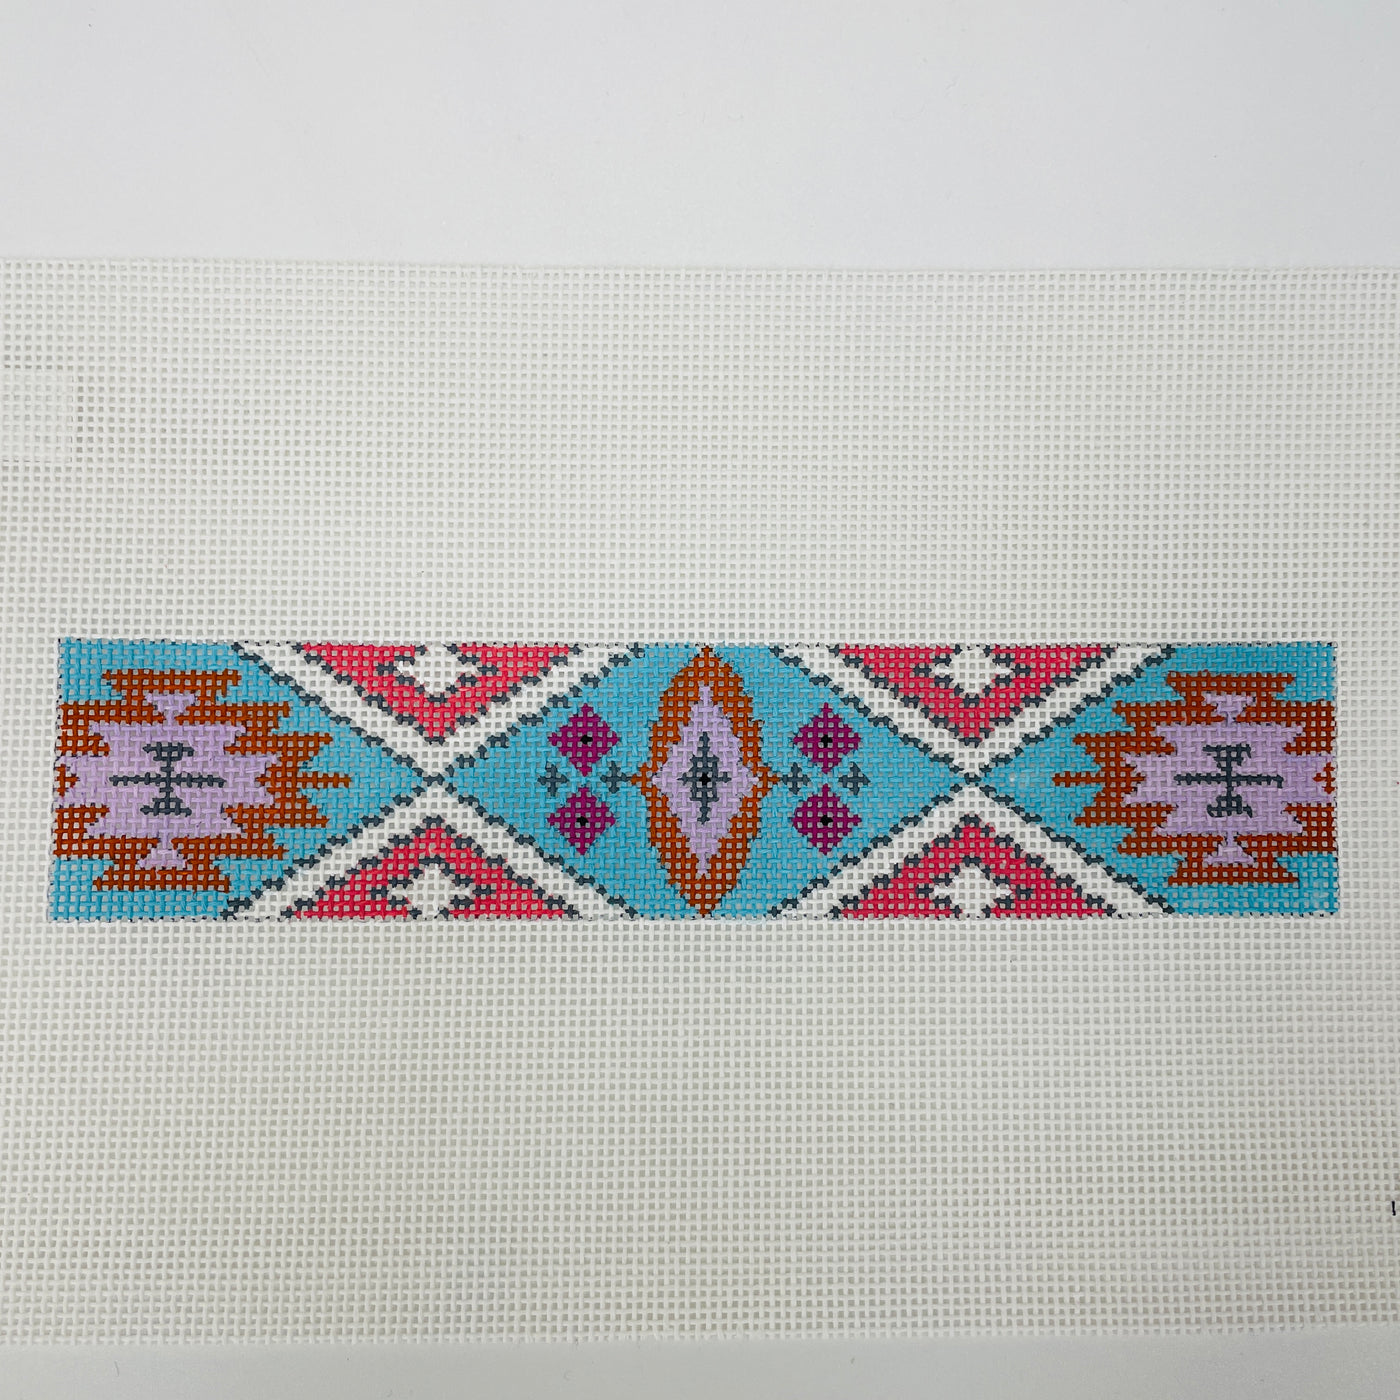 Aztec Patterned Bracelet Needlepoint Canvas